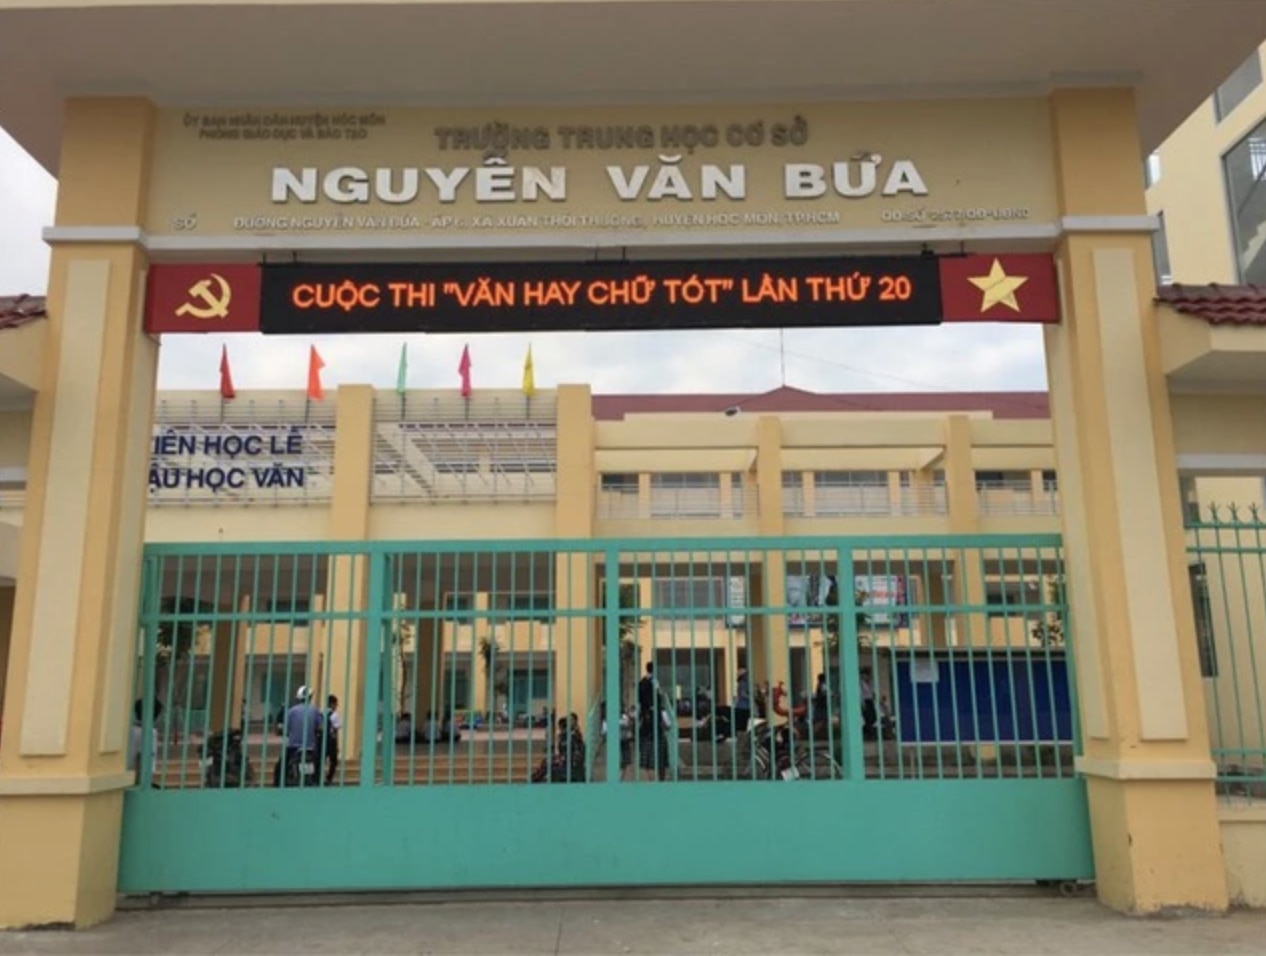 Trường THCS Nguyễn Văn Bứa, huyện Hóc Môn, phát đơn in sẵn nội dung xin không thi lớp 10 cho học sinh